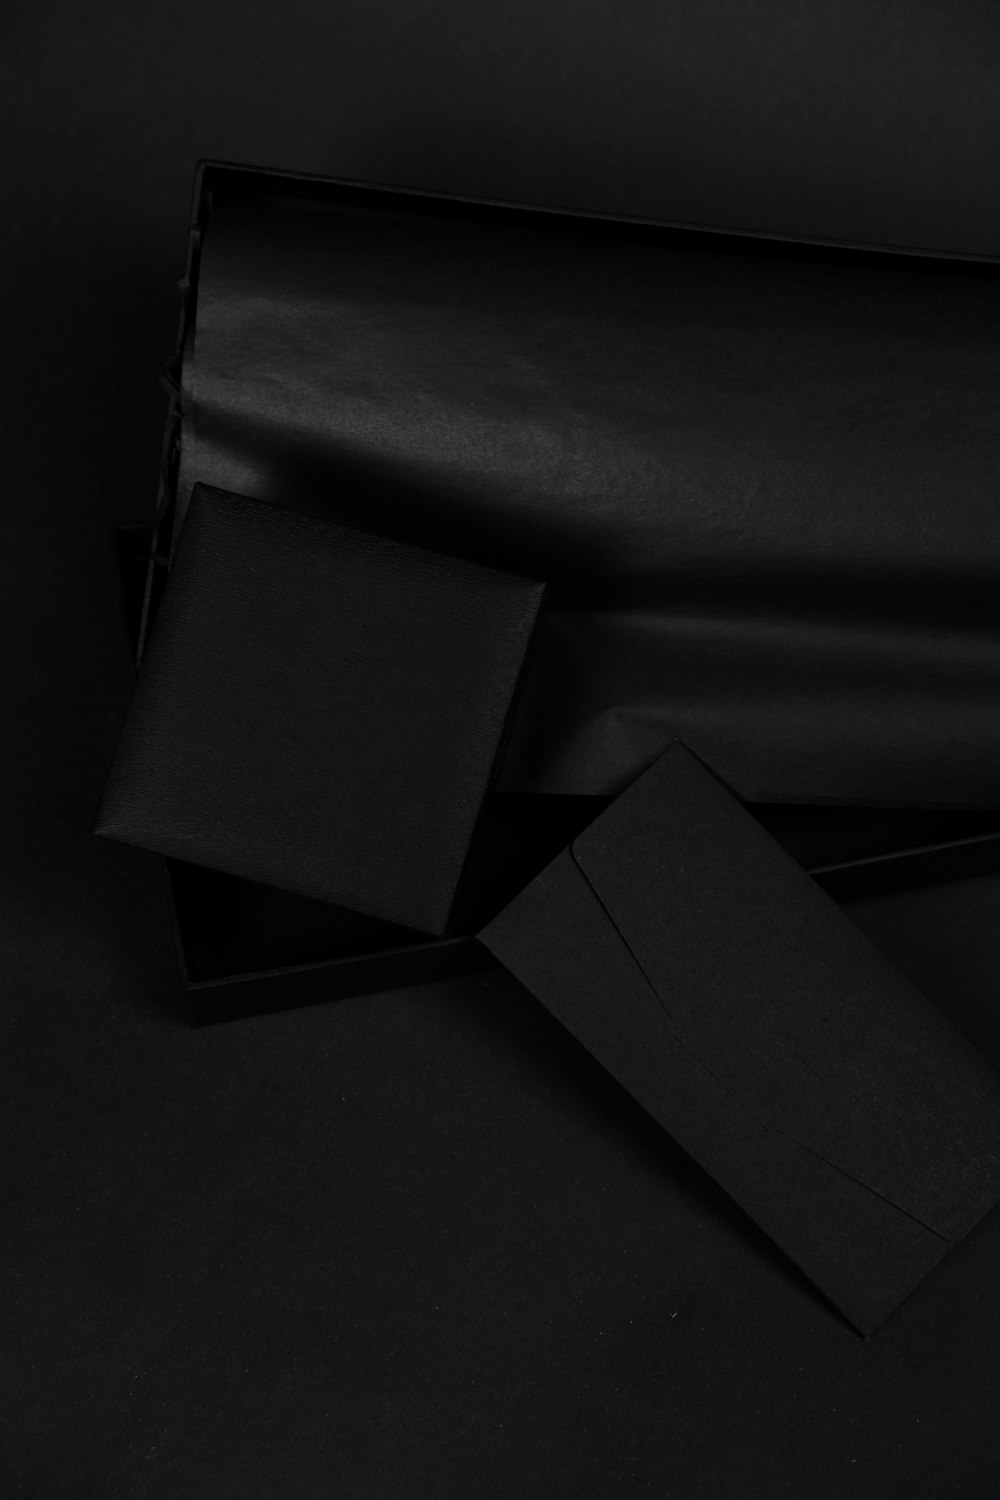 Black Box auf schwarzem Textil